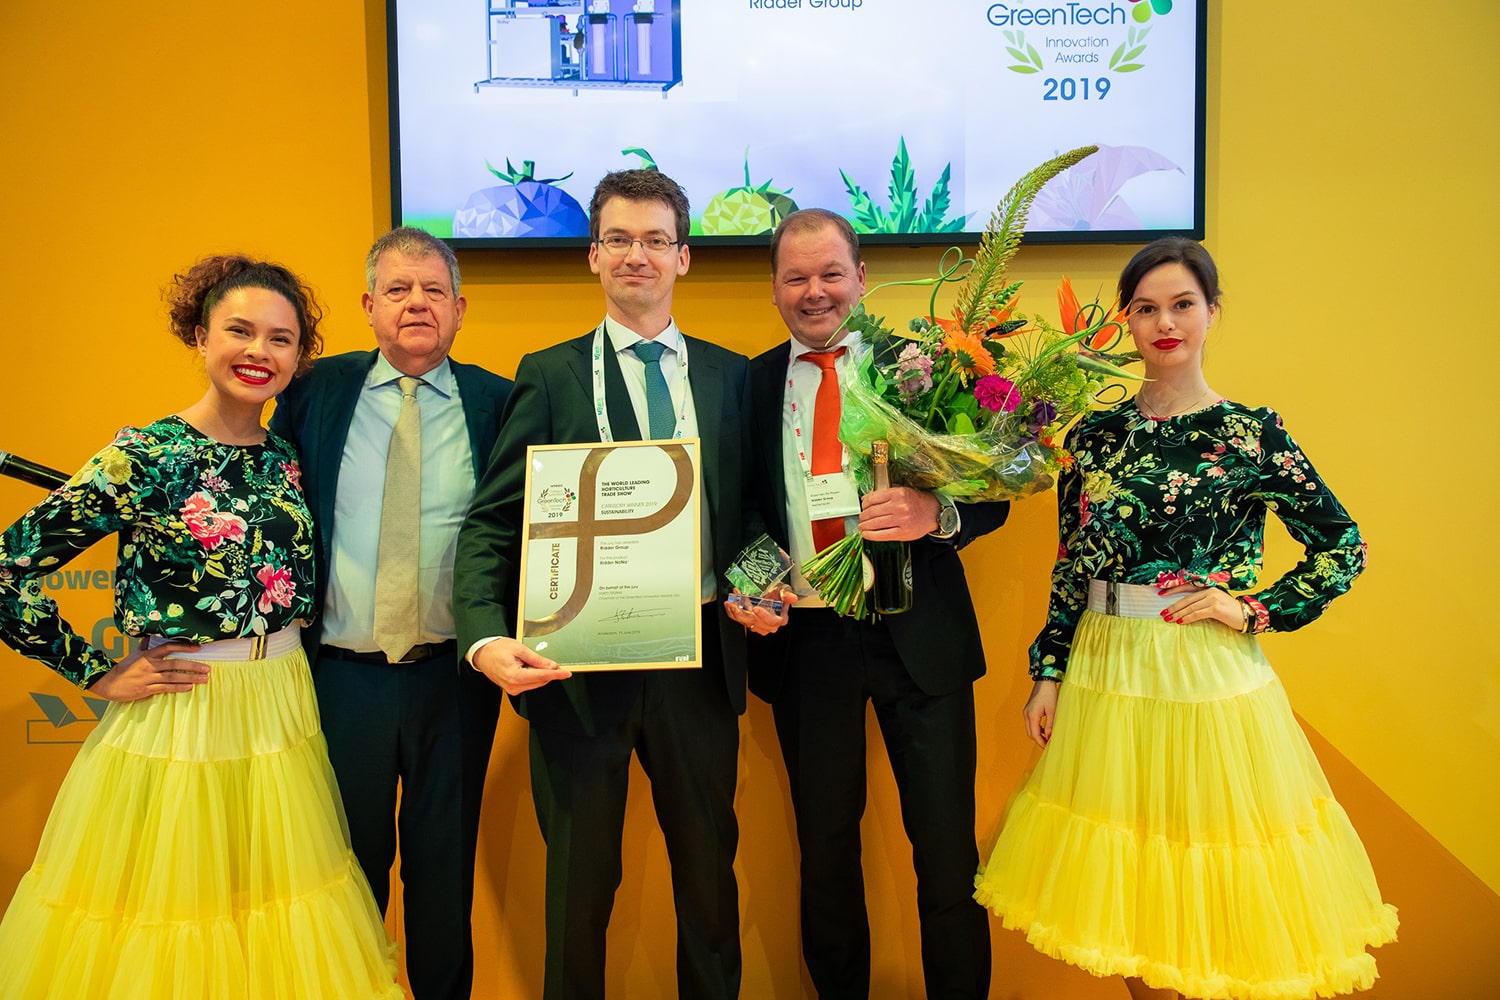 greentech-2019-innovation-awards-winners-announced